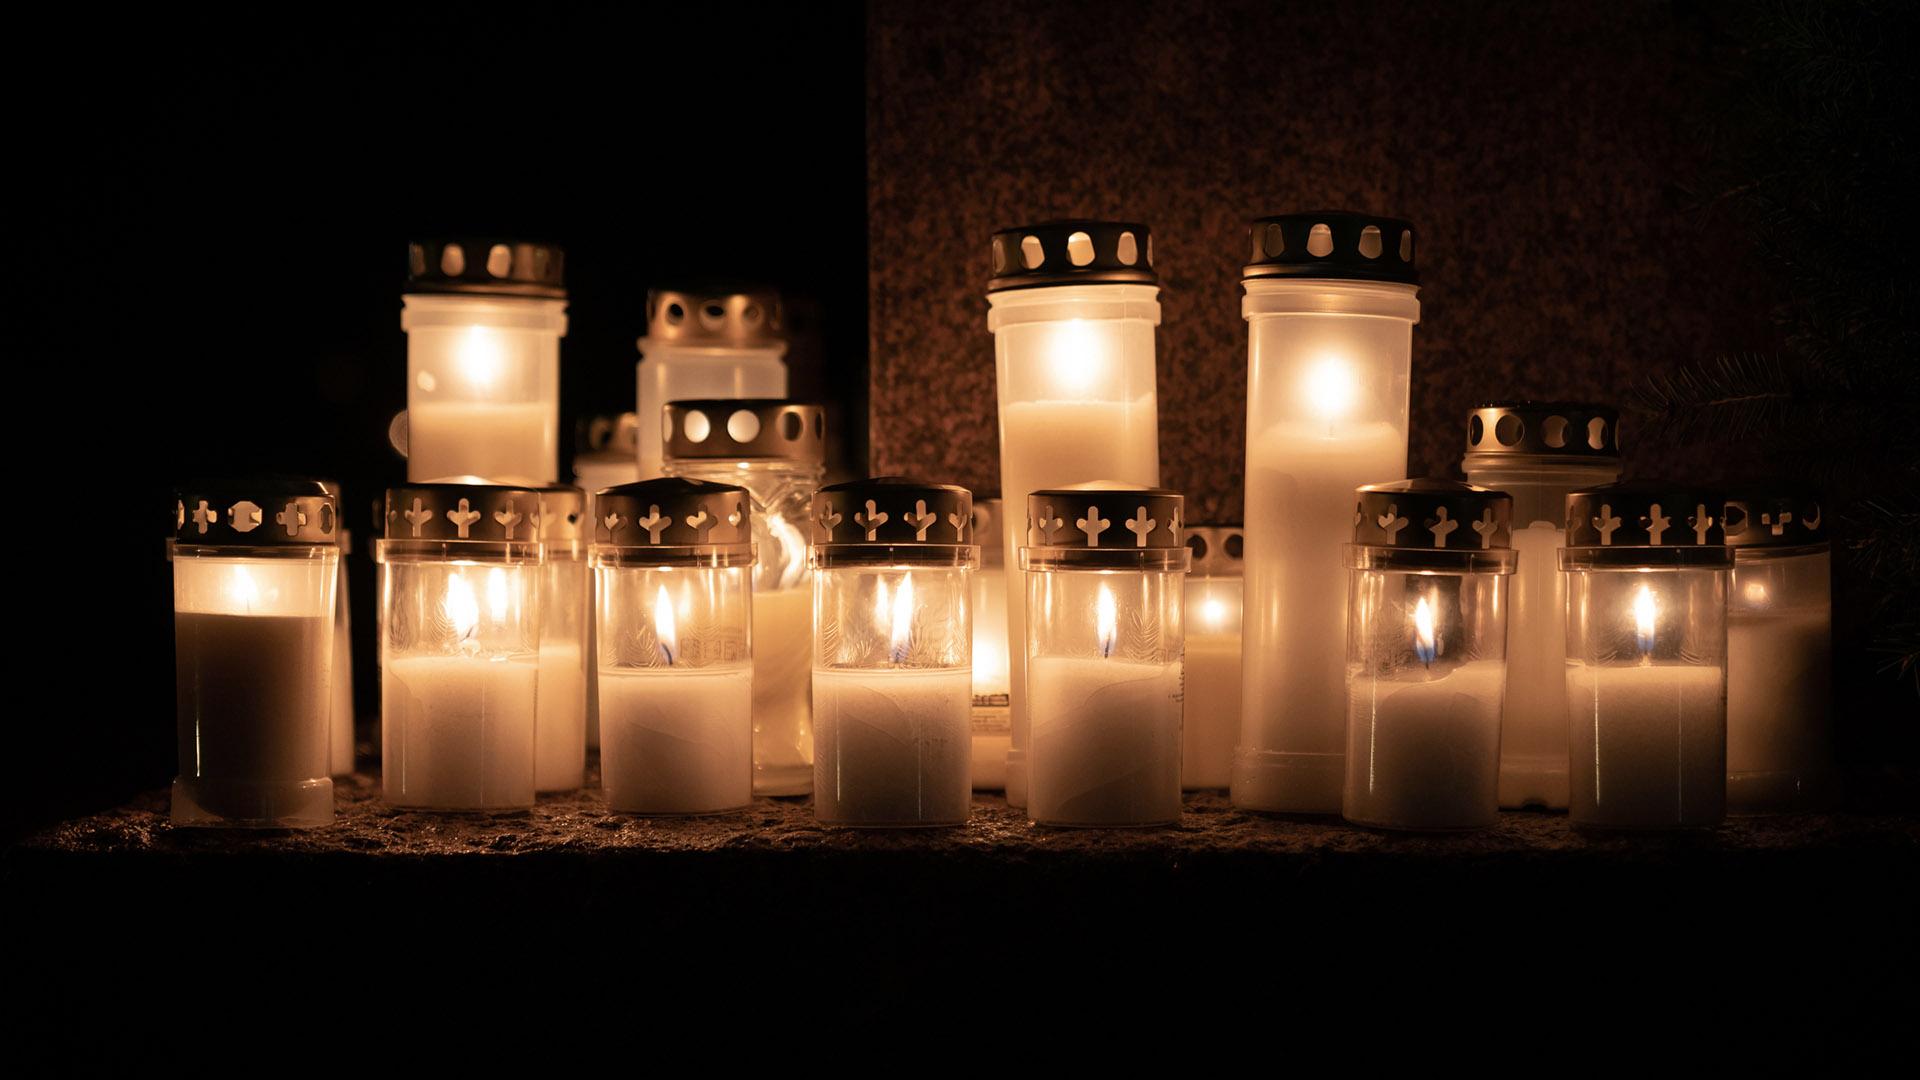 Hautaustoimisto Ikäheimon Kynttilät haudalle -palvelu voi toimittaa kynttilän omaisen valitsemalle haudalle tämän puolesta.